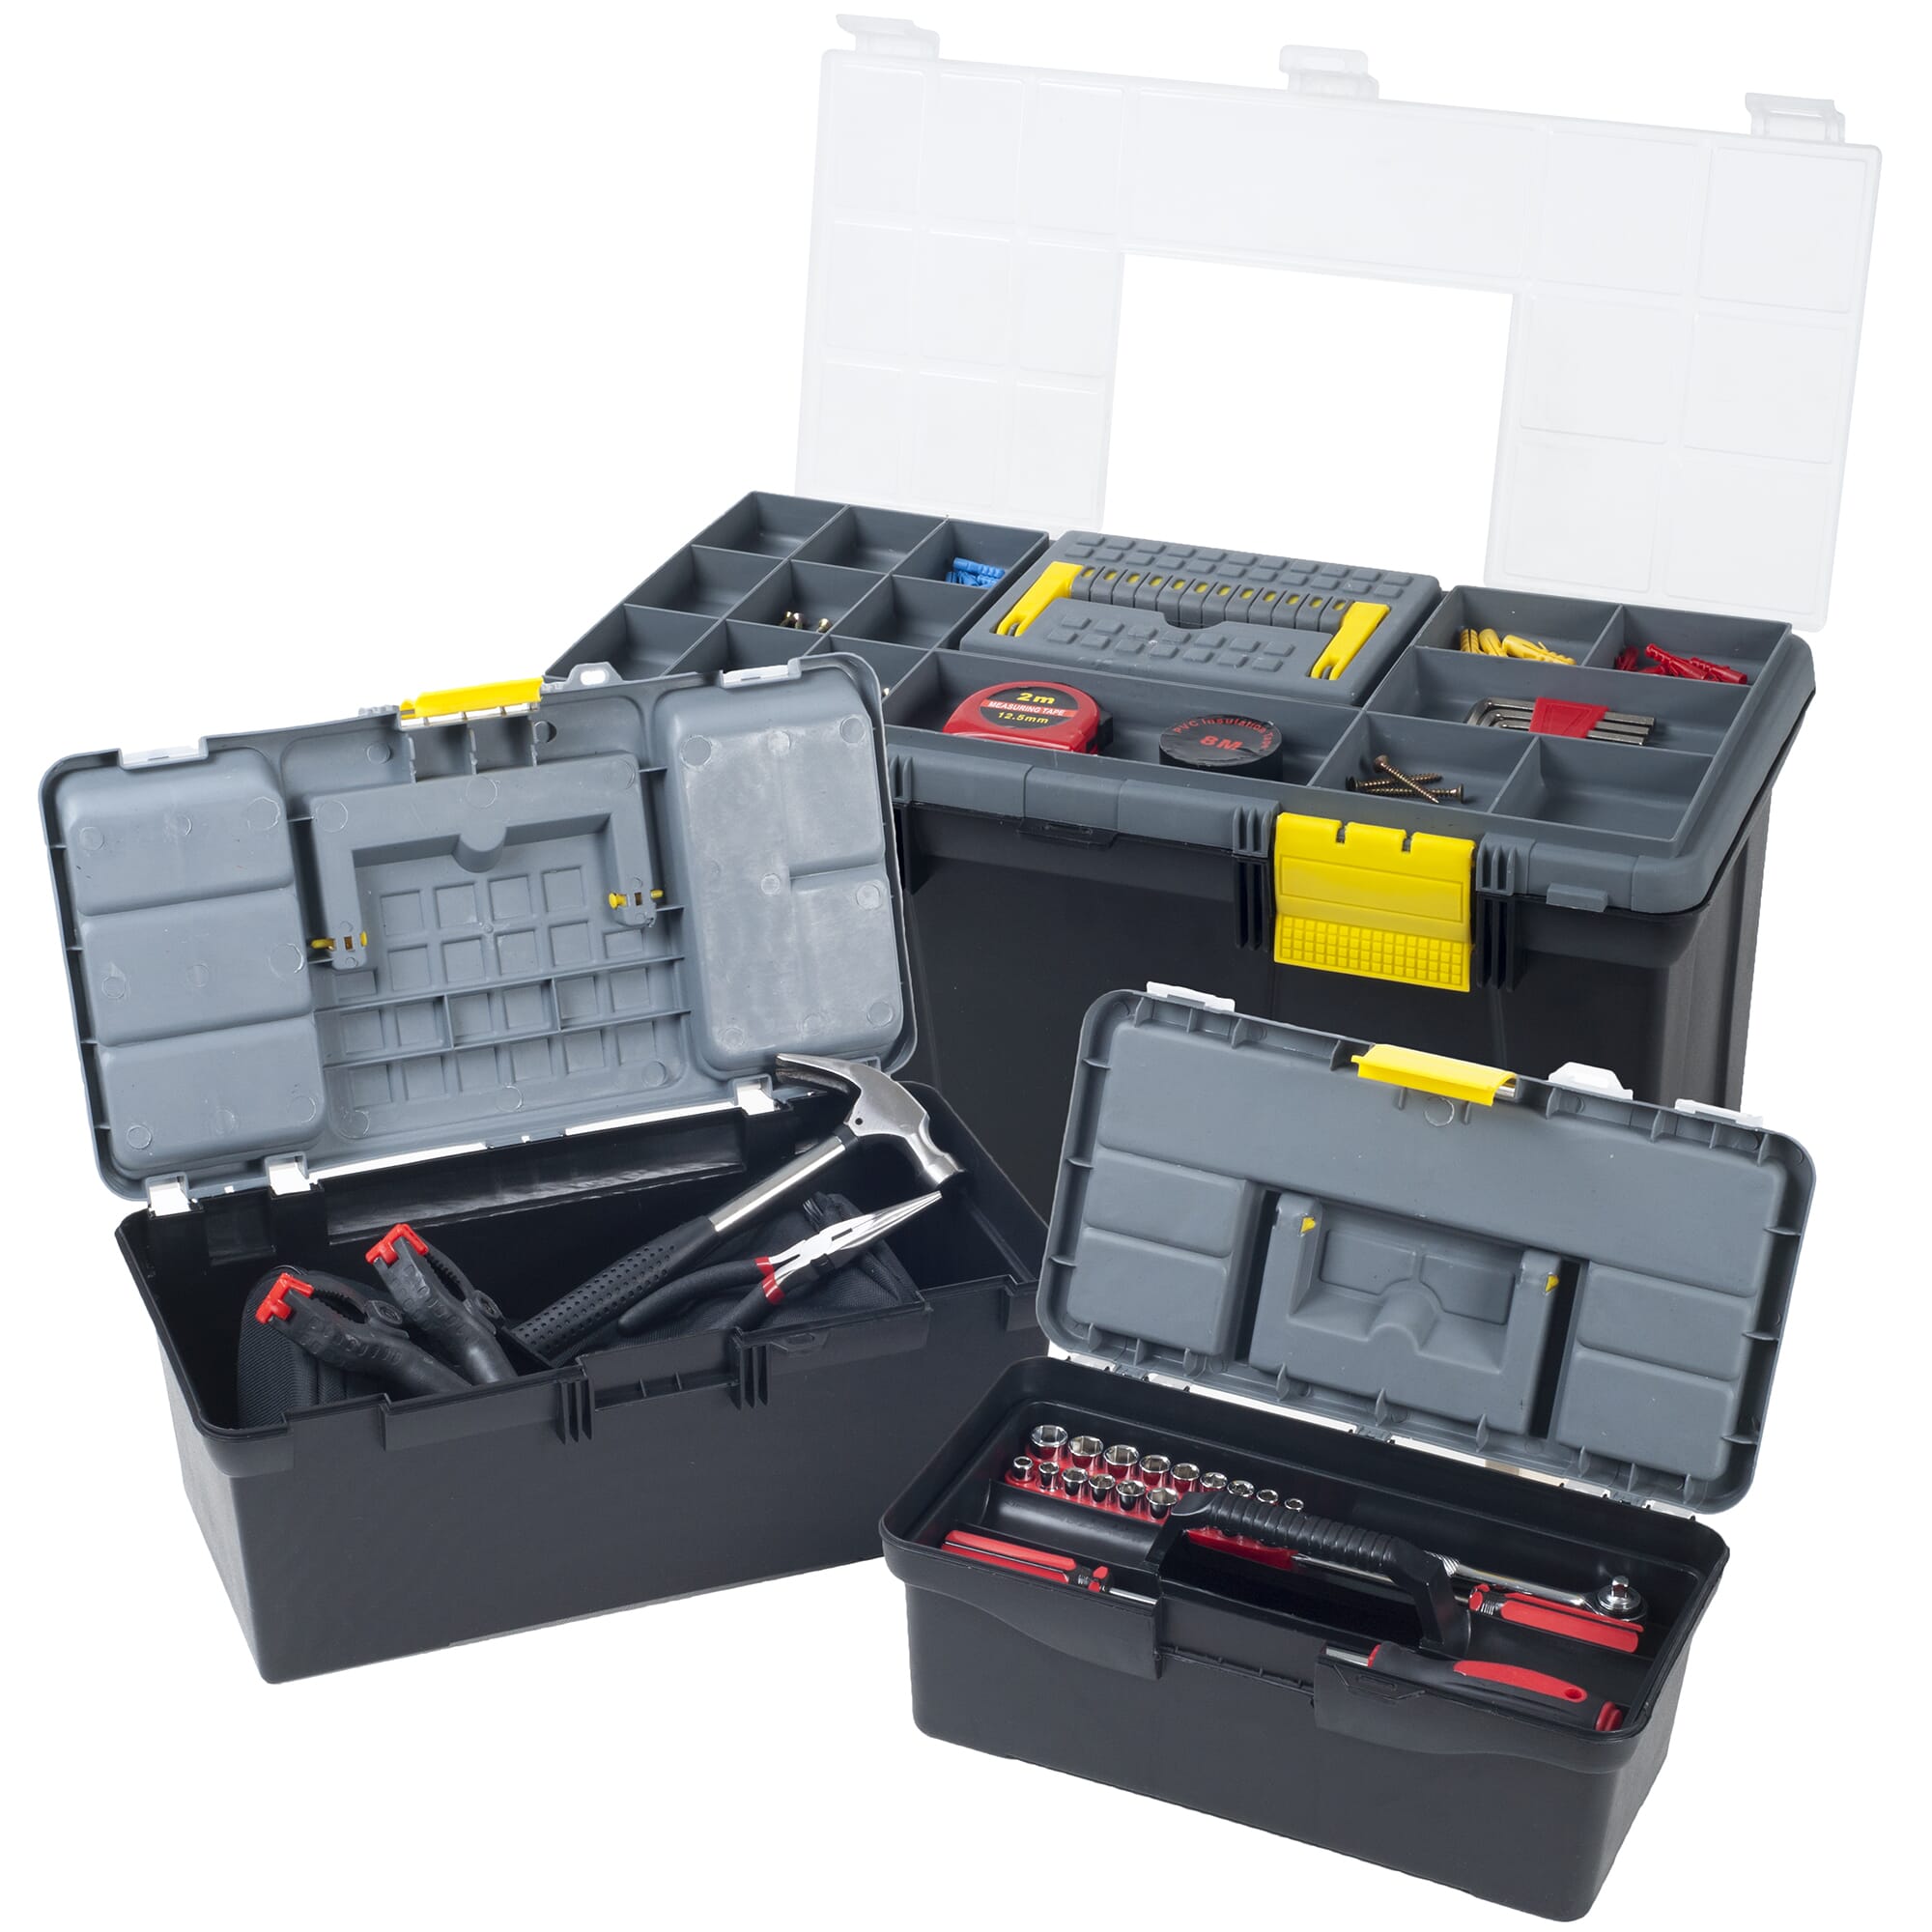 Stalwart Parts & Crafts 3-in-1 Tool Box Storage Set - Free Shipping